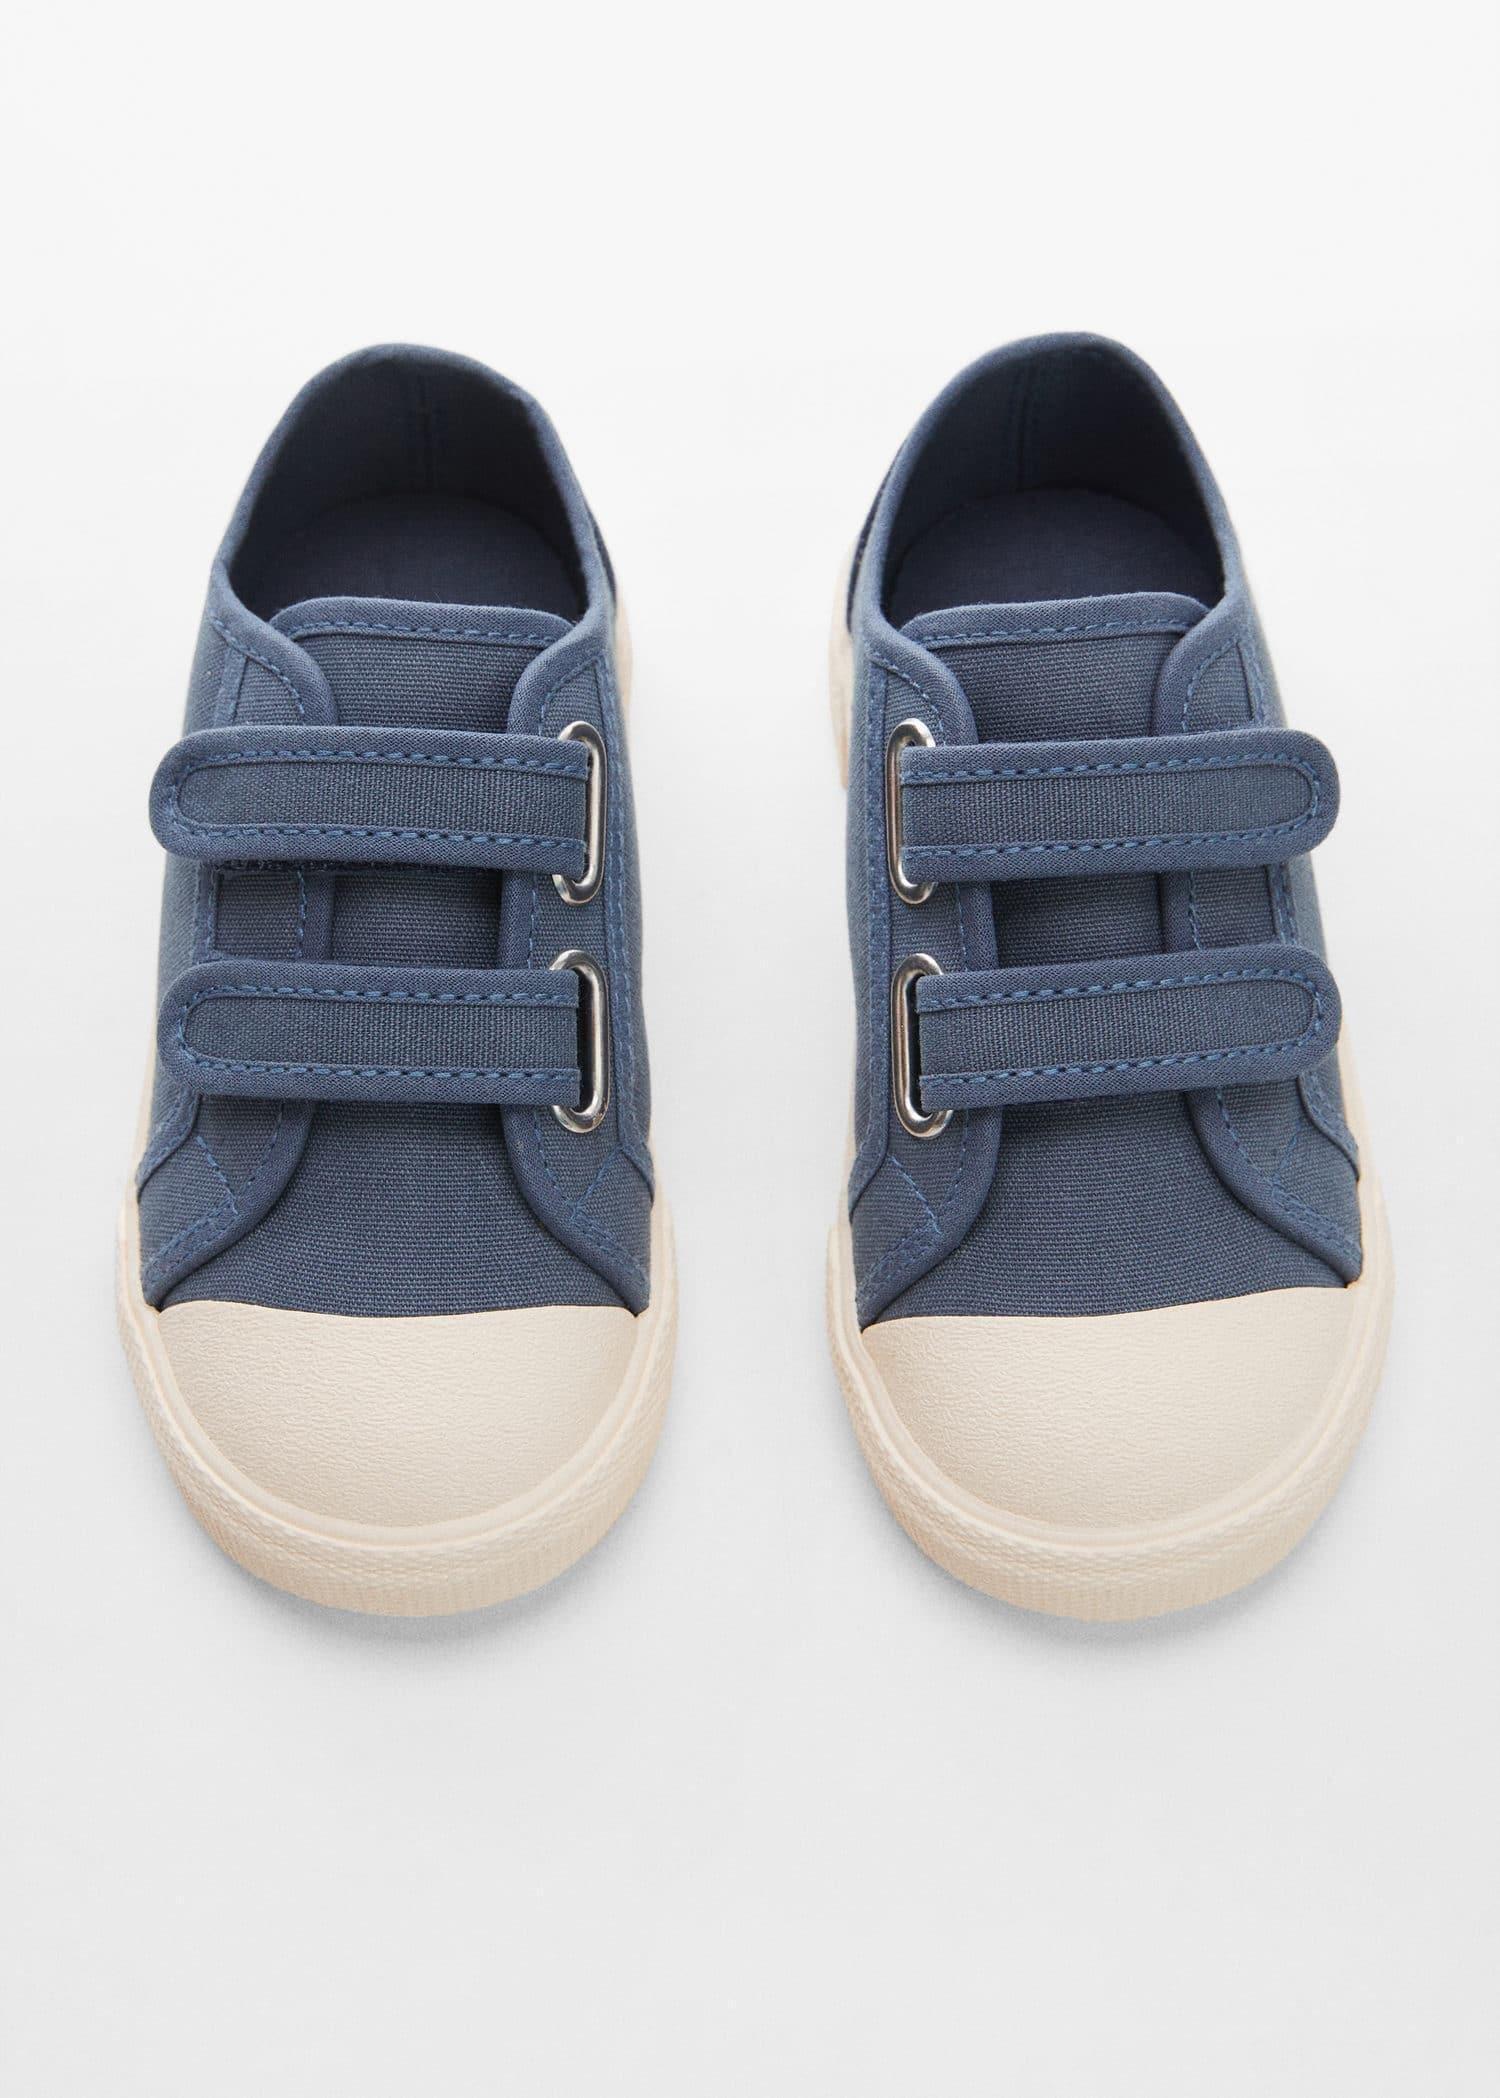 Mango - Blue Velcro Fastening Sneakers, Kids Boys